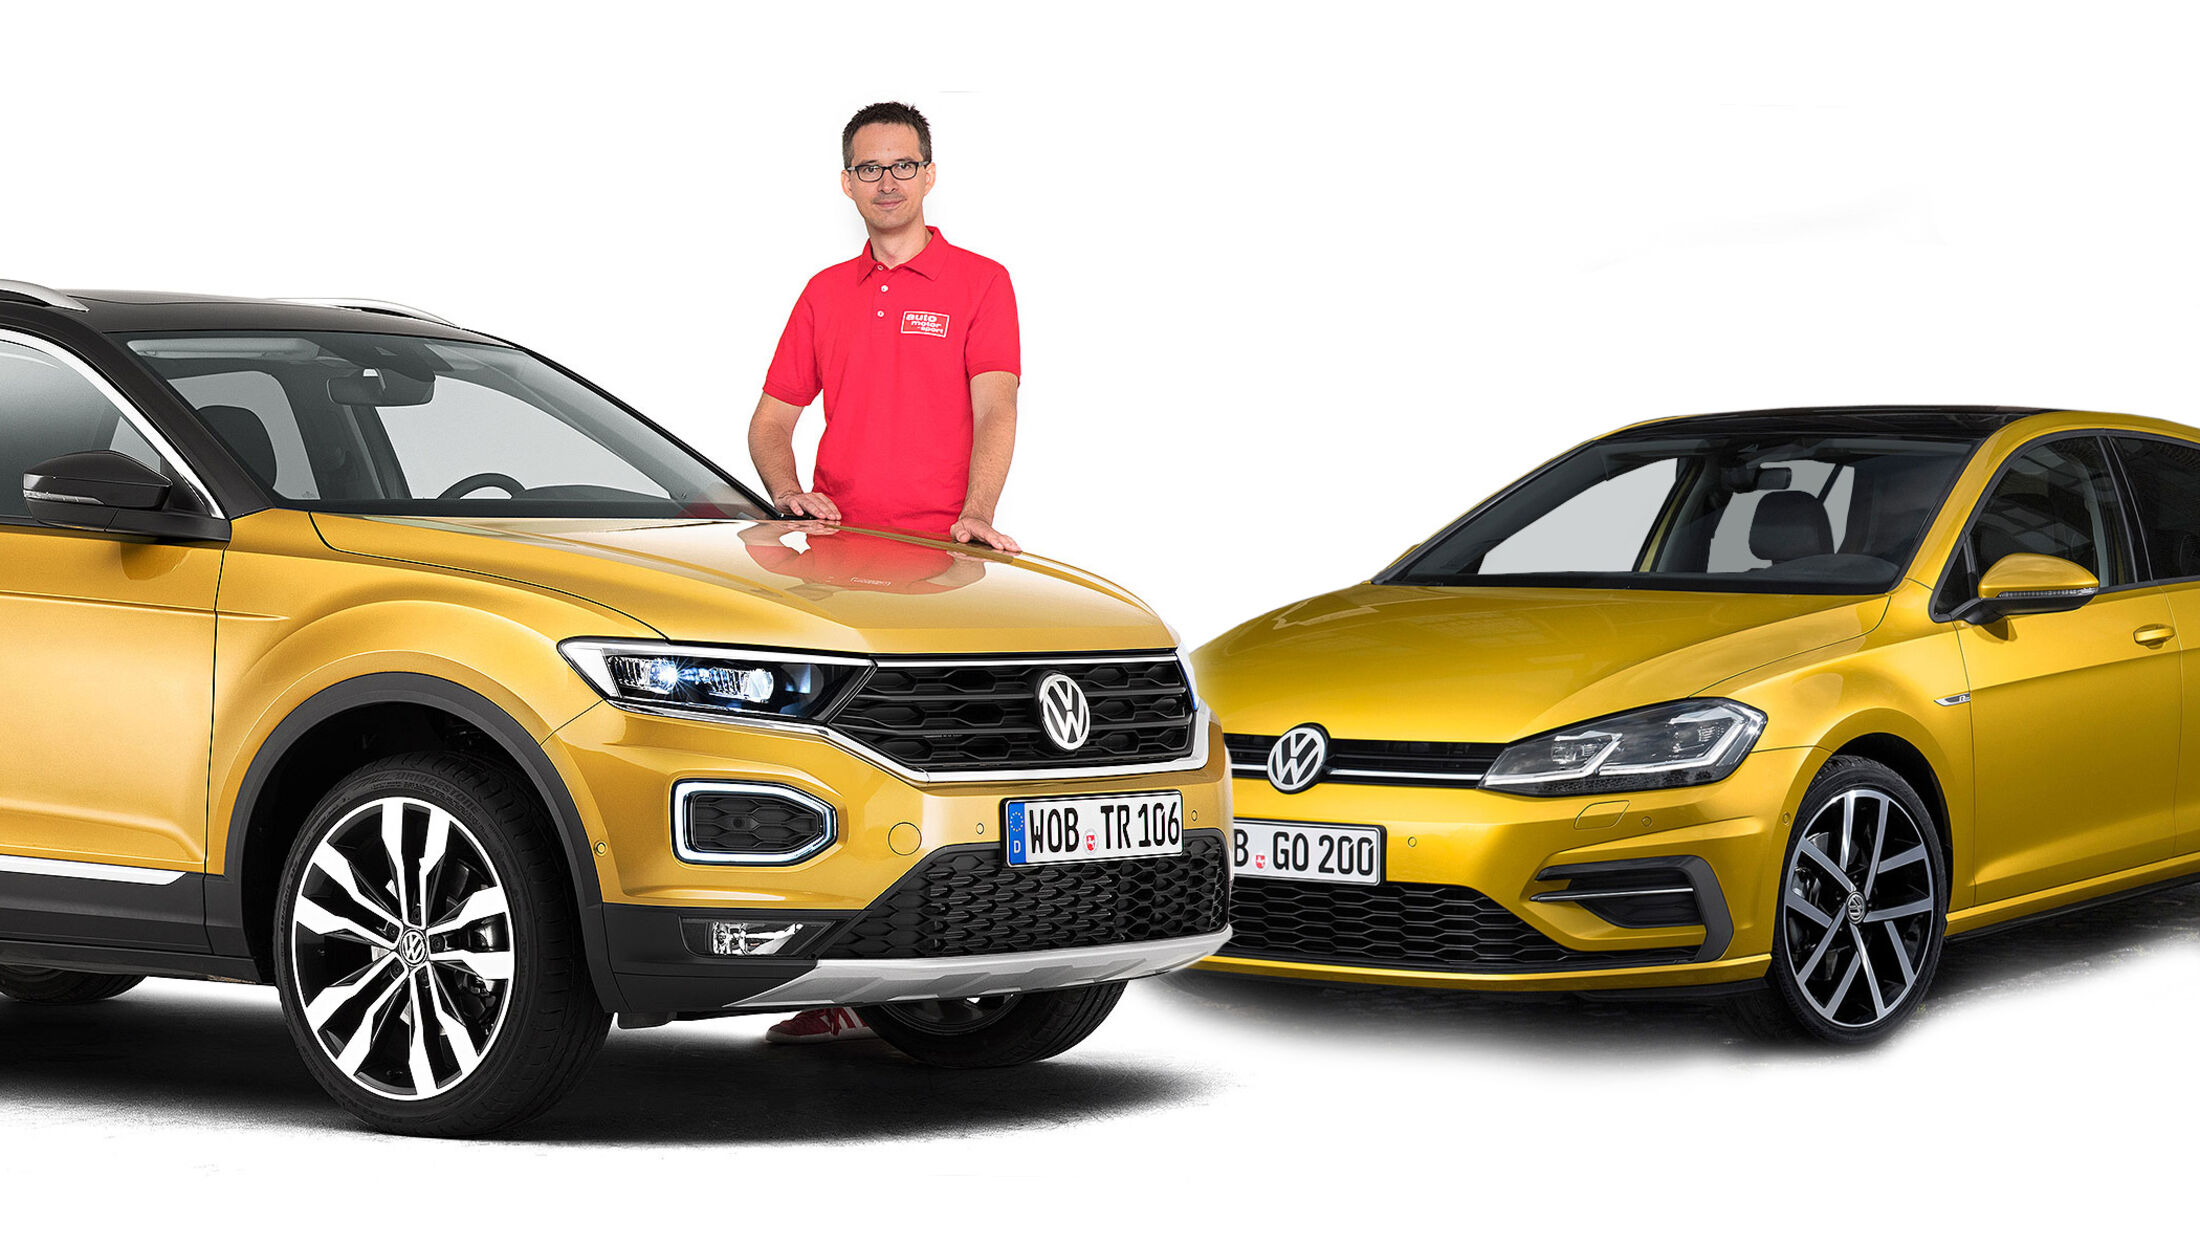 VW Golf/VW T-Roc: Vergleichstest